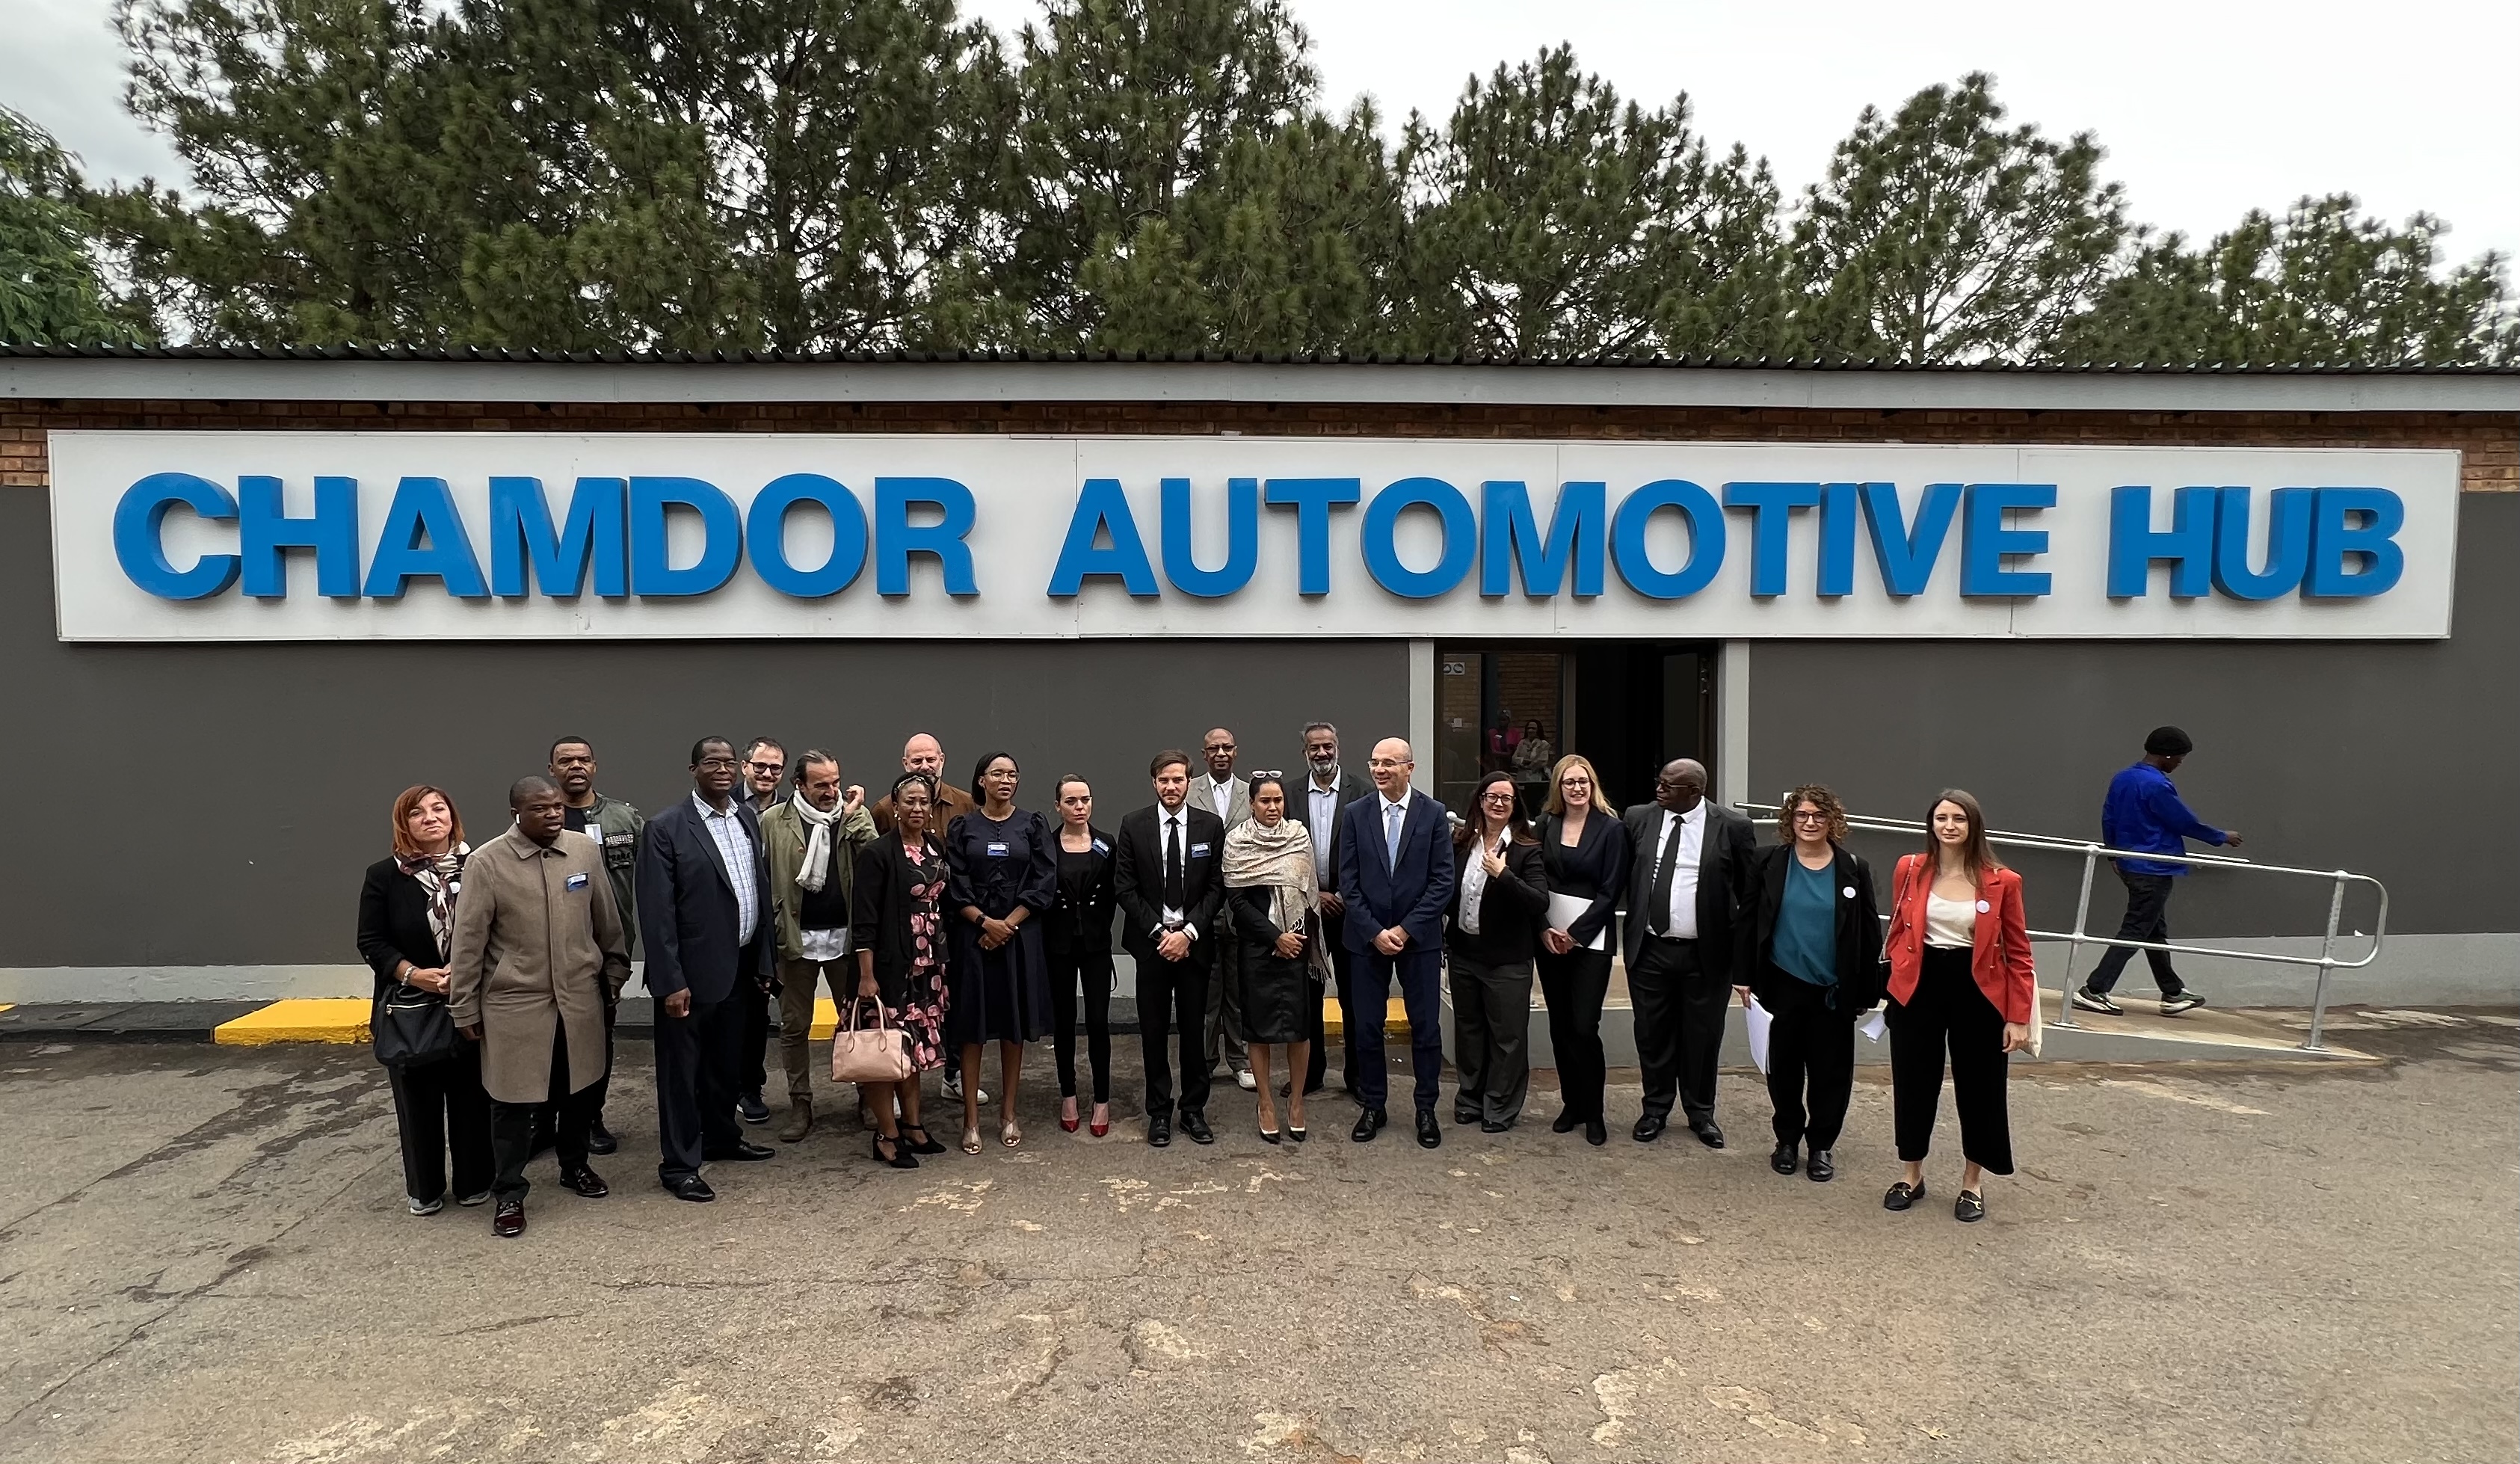 L'inaugurazione del Chamdor Automotive Hub